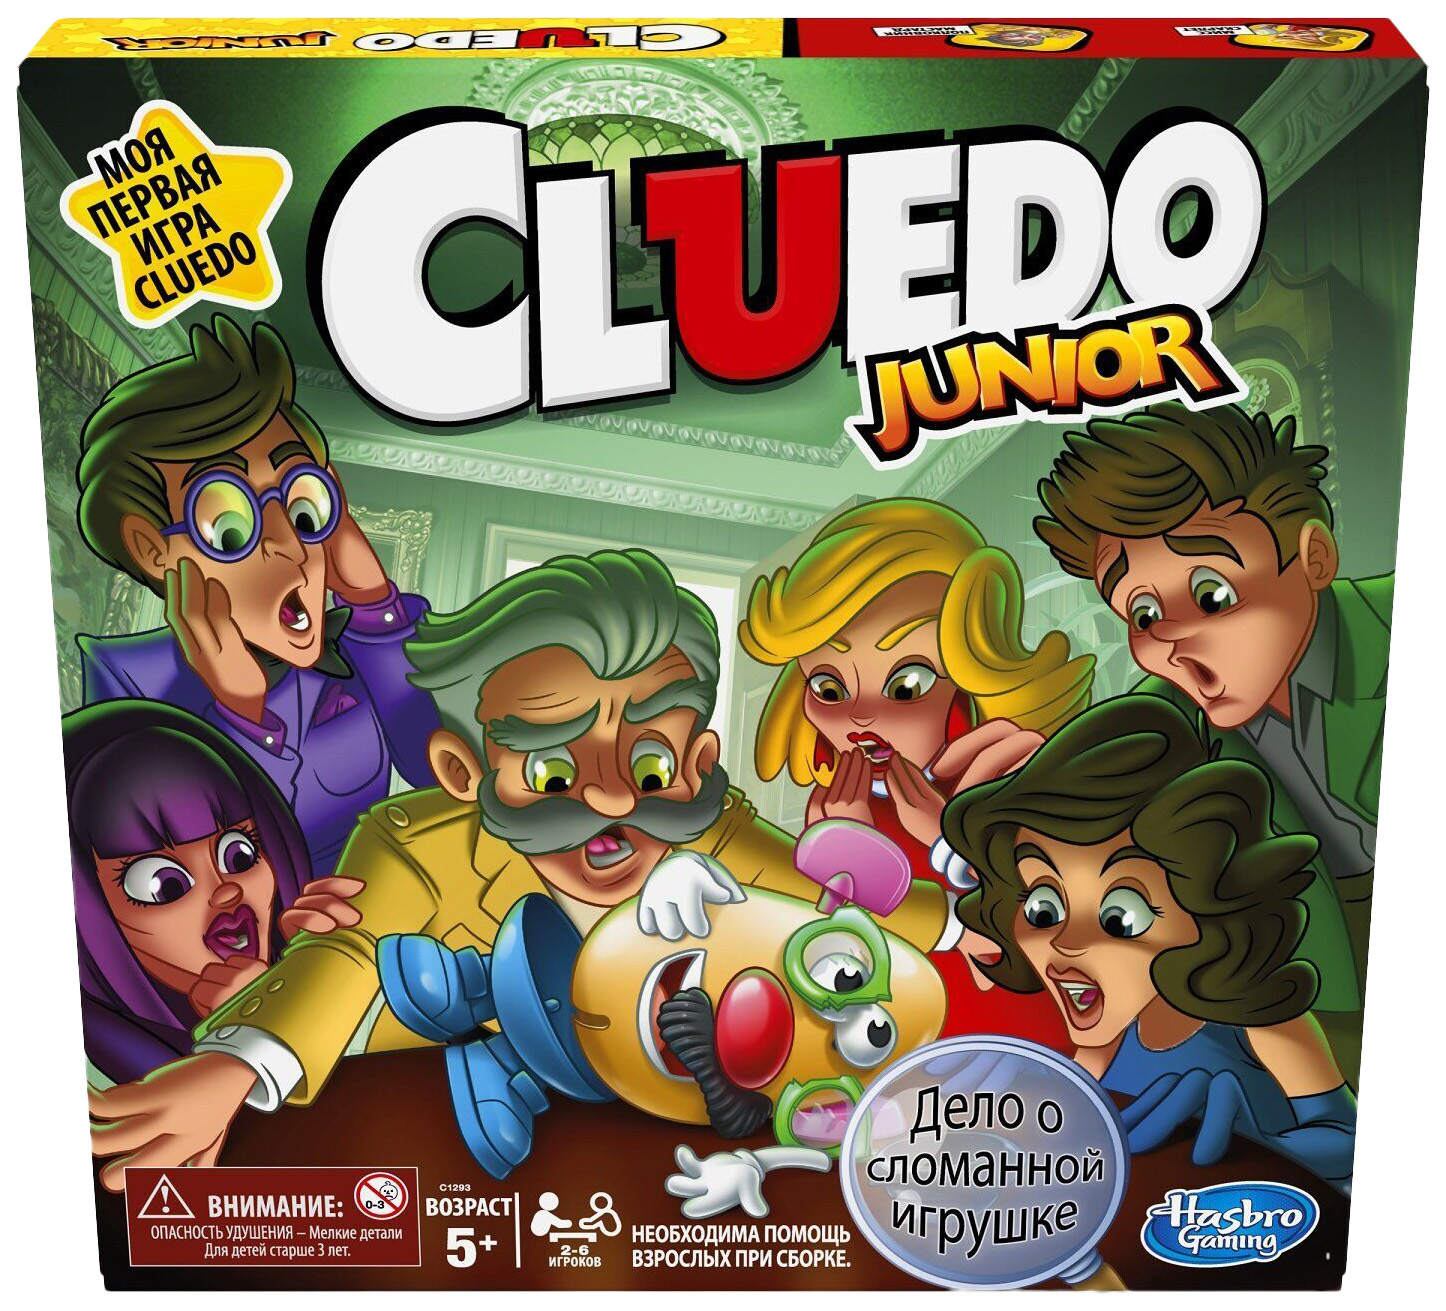 Игра настольная Hasbro Клуэдо джуниор C1293E76 игра настольная hasbro клуэдо джуниор c1293e76